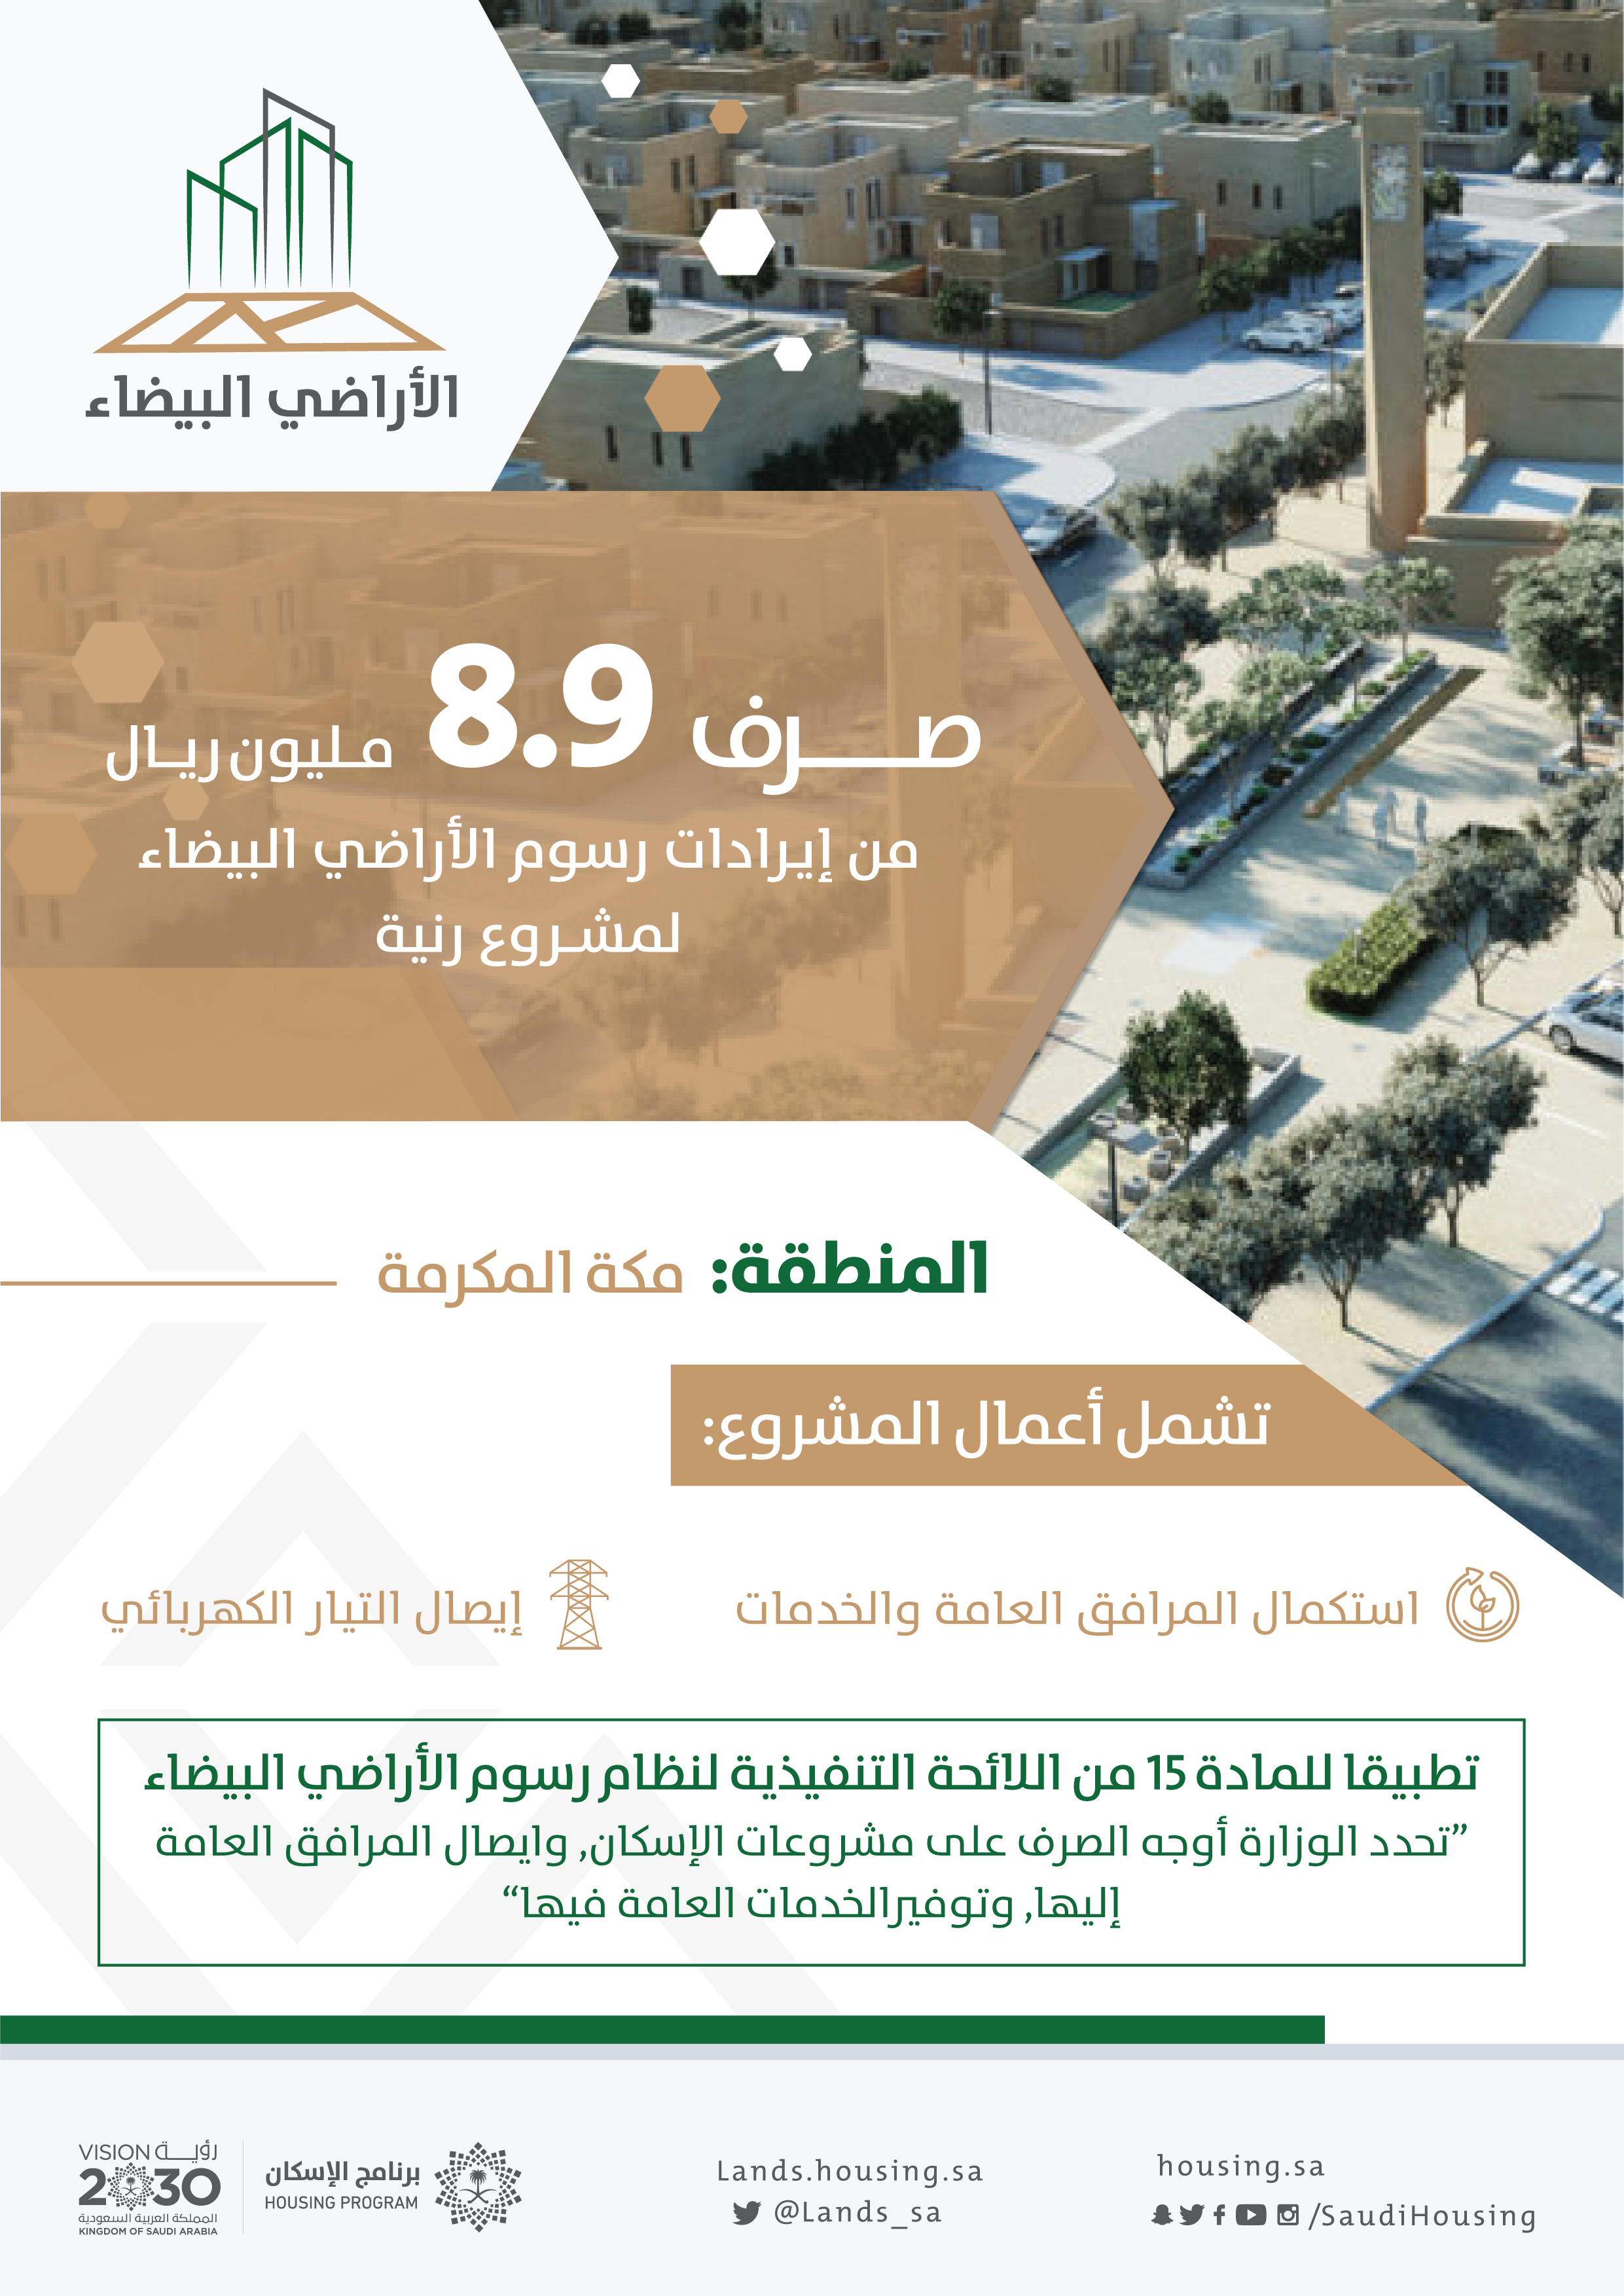 "الأراضي البيضاء": صرف 8,9 مليون ريال لتطوير البنى التحتية لمشروع رنية في مكة المكرمة  